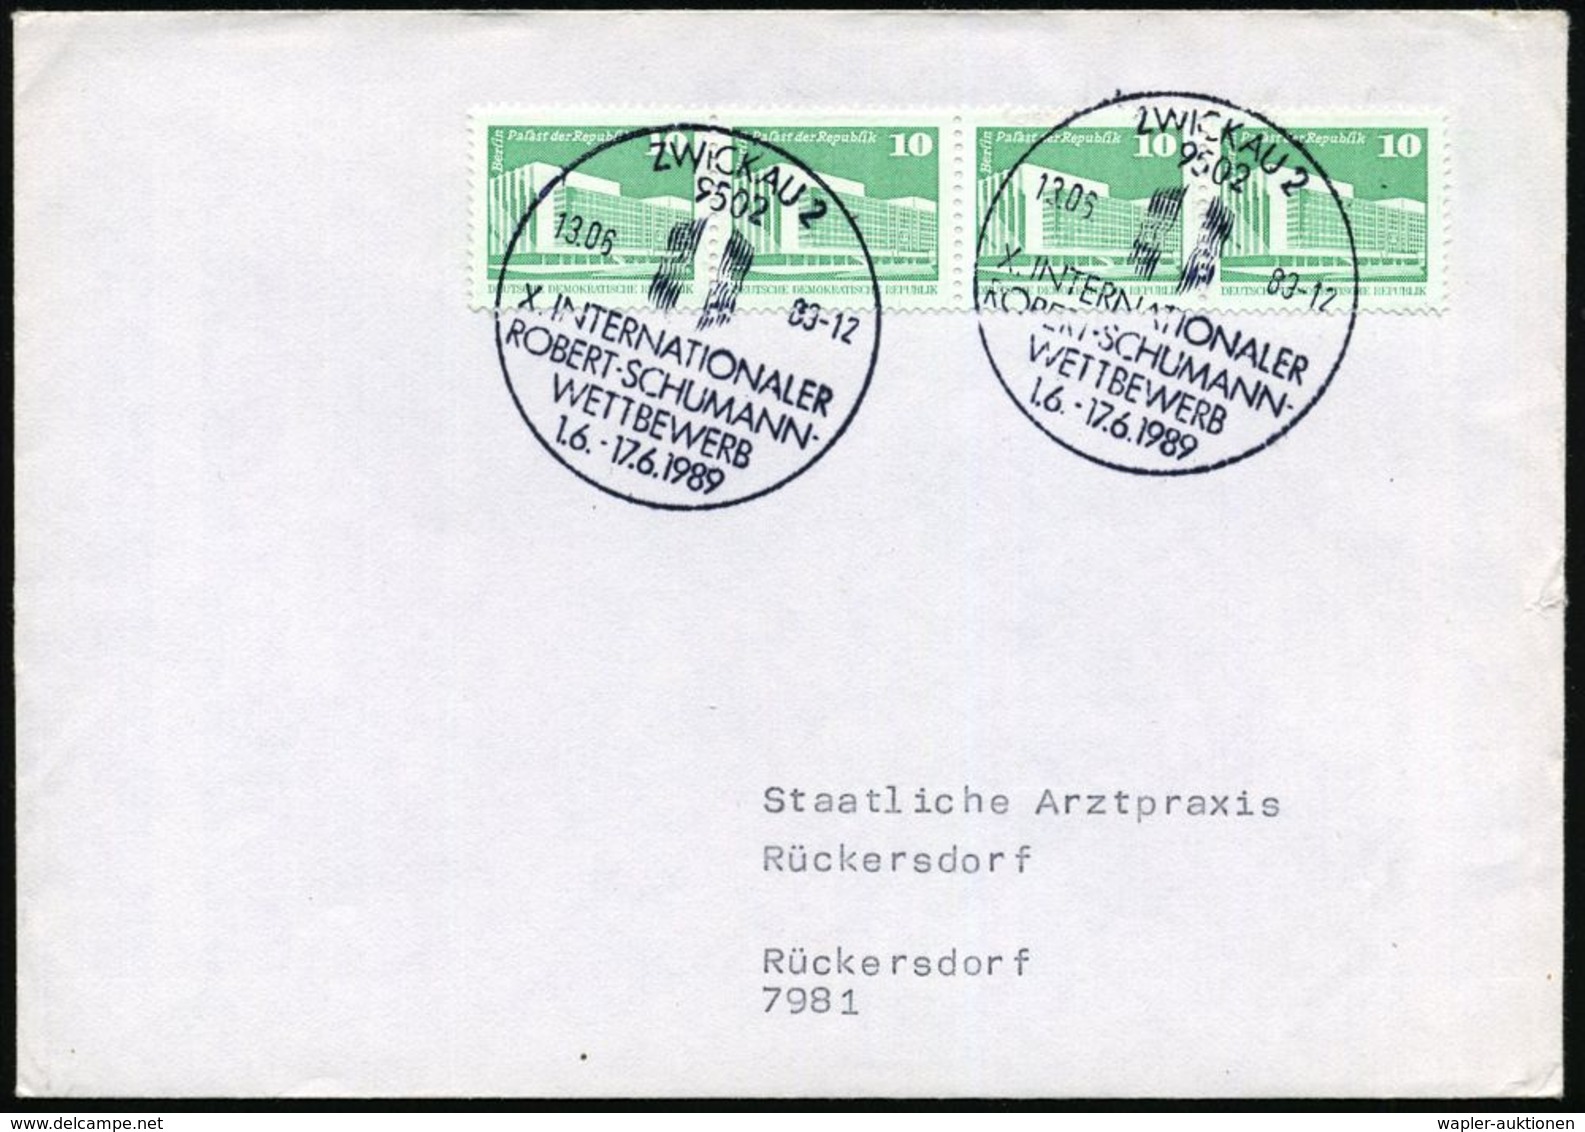 ROBERT SCHUMANN : 9502 ZWICKAU 2/ X.INTERNAT./ ROBERT-SCHUMANN-/ WETTBEWERB 1989 (13.6.) SSt (Logo) 2x Klar Auf Inl.-Bf. - Musique